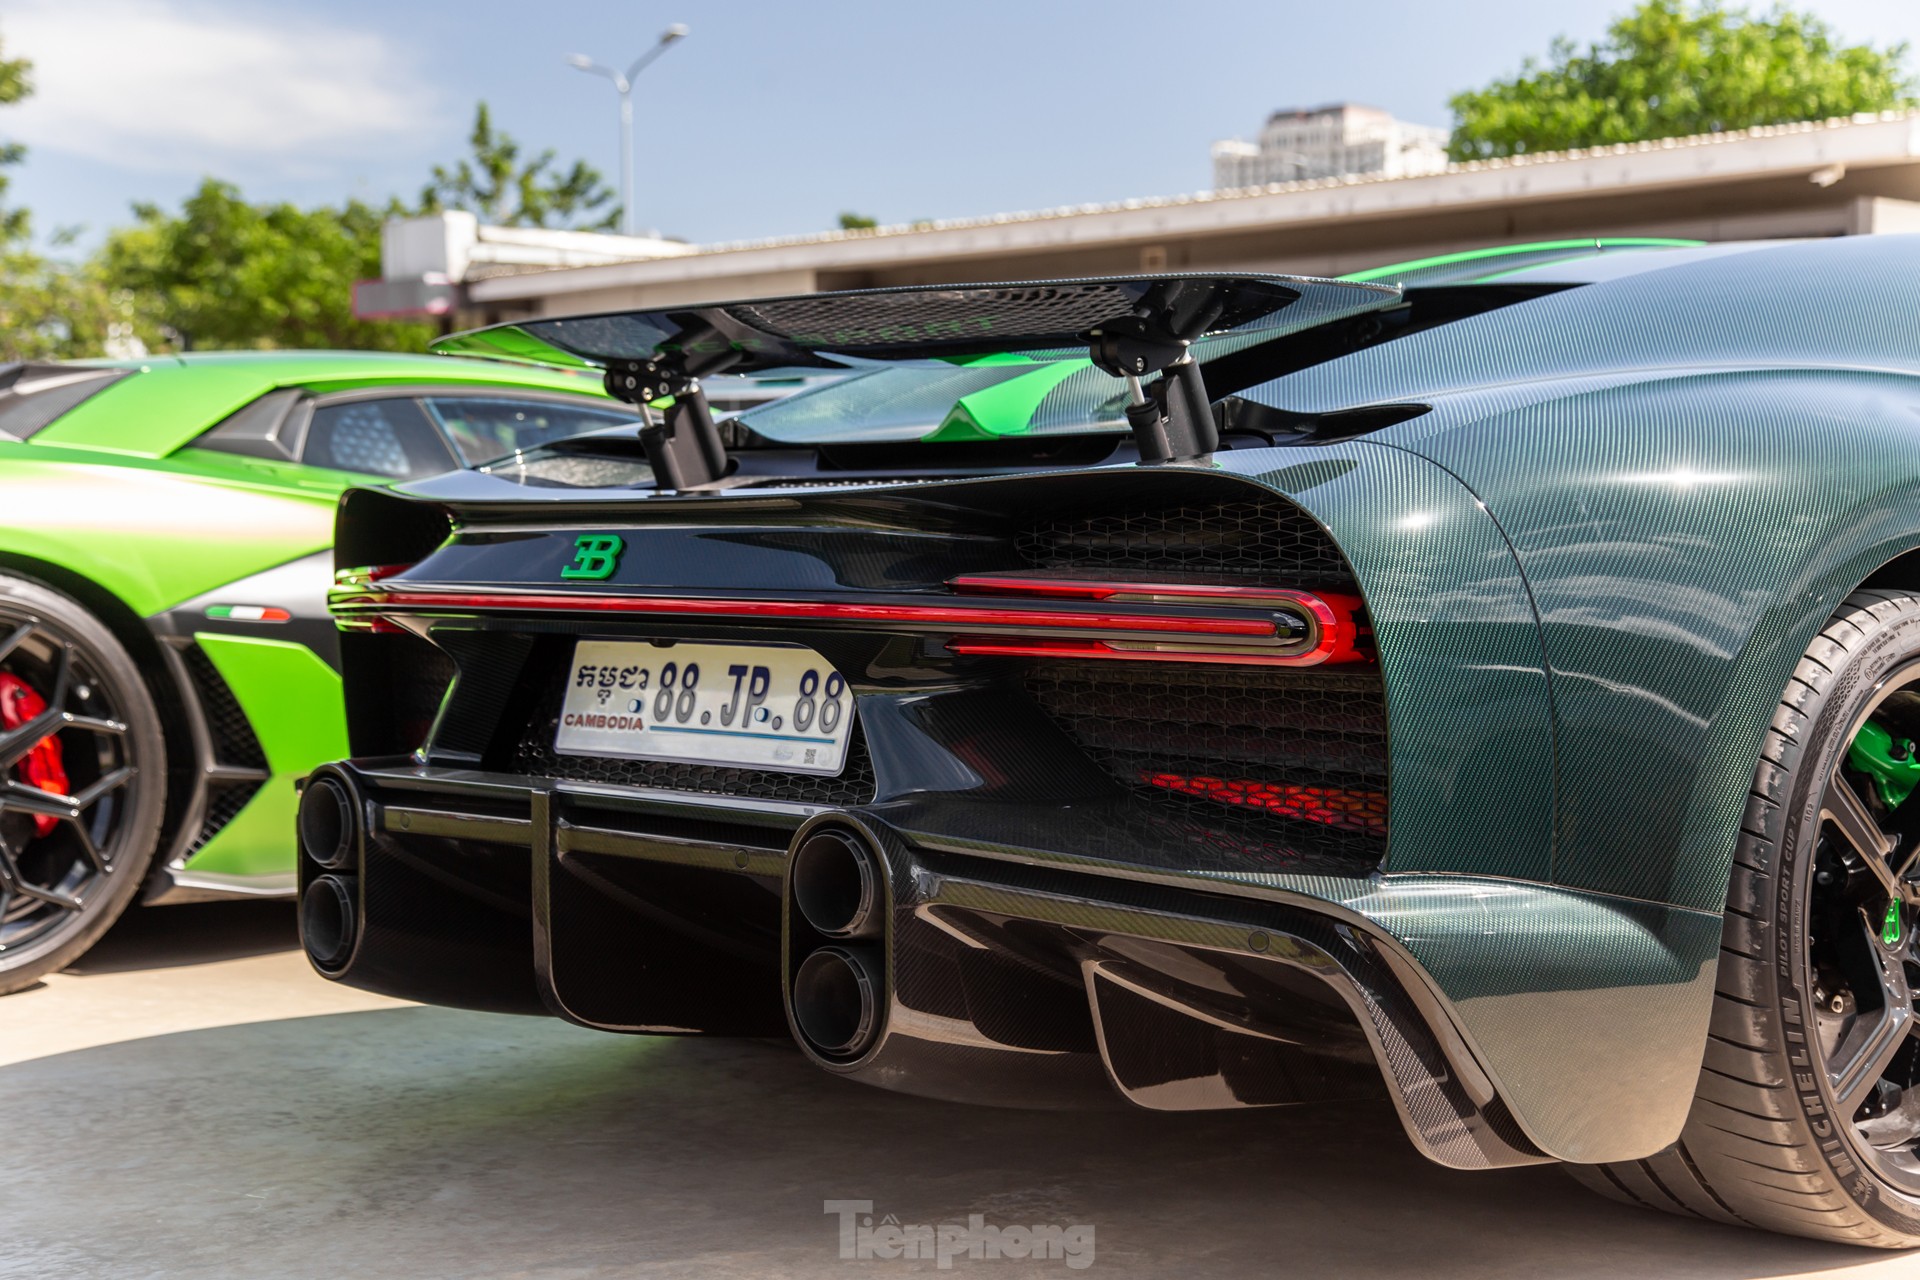 'Siêu phẩm' Bugatti Chiron Super Sport trị giá 10 triệu USD tại Campuchia